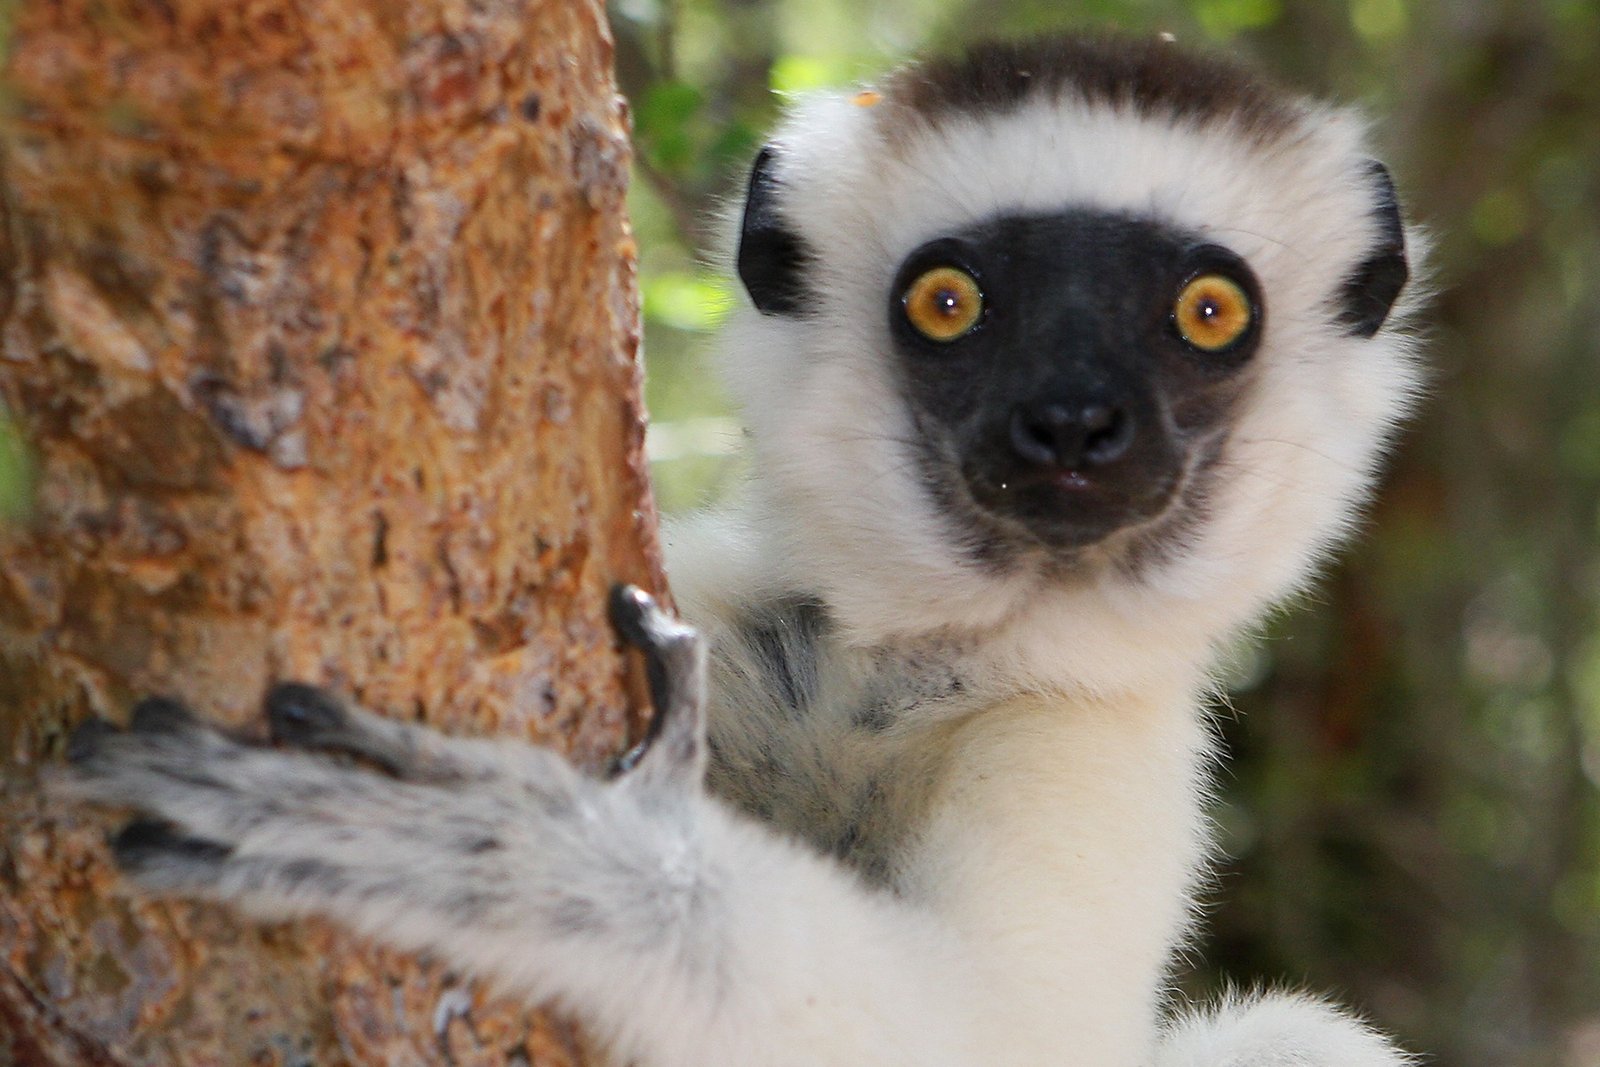 Madagascar Tourism Expeditions